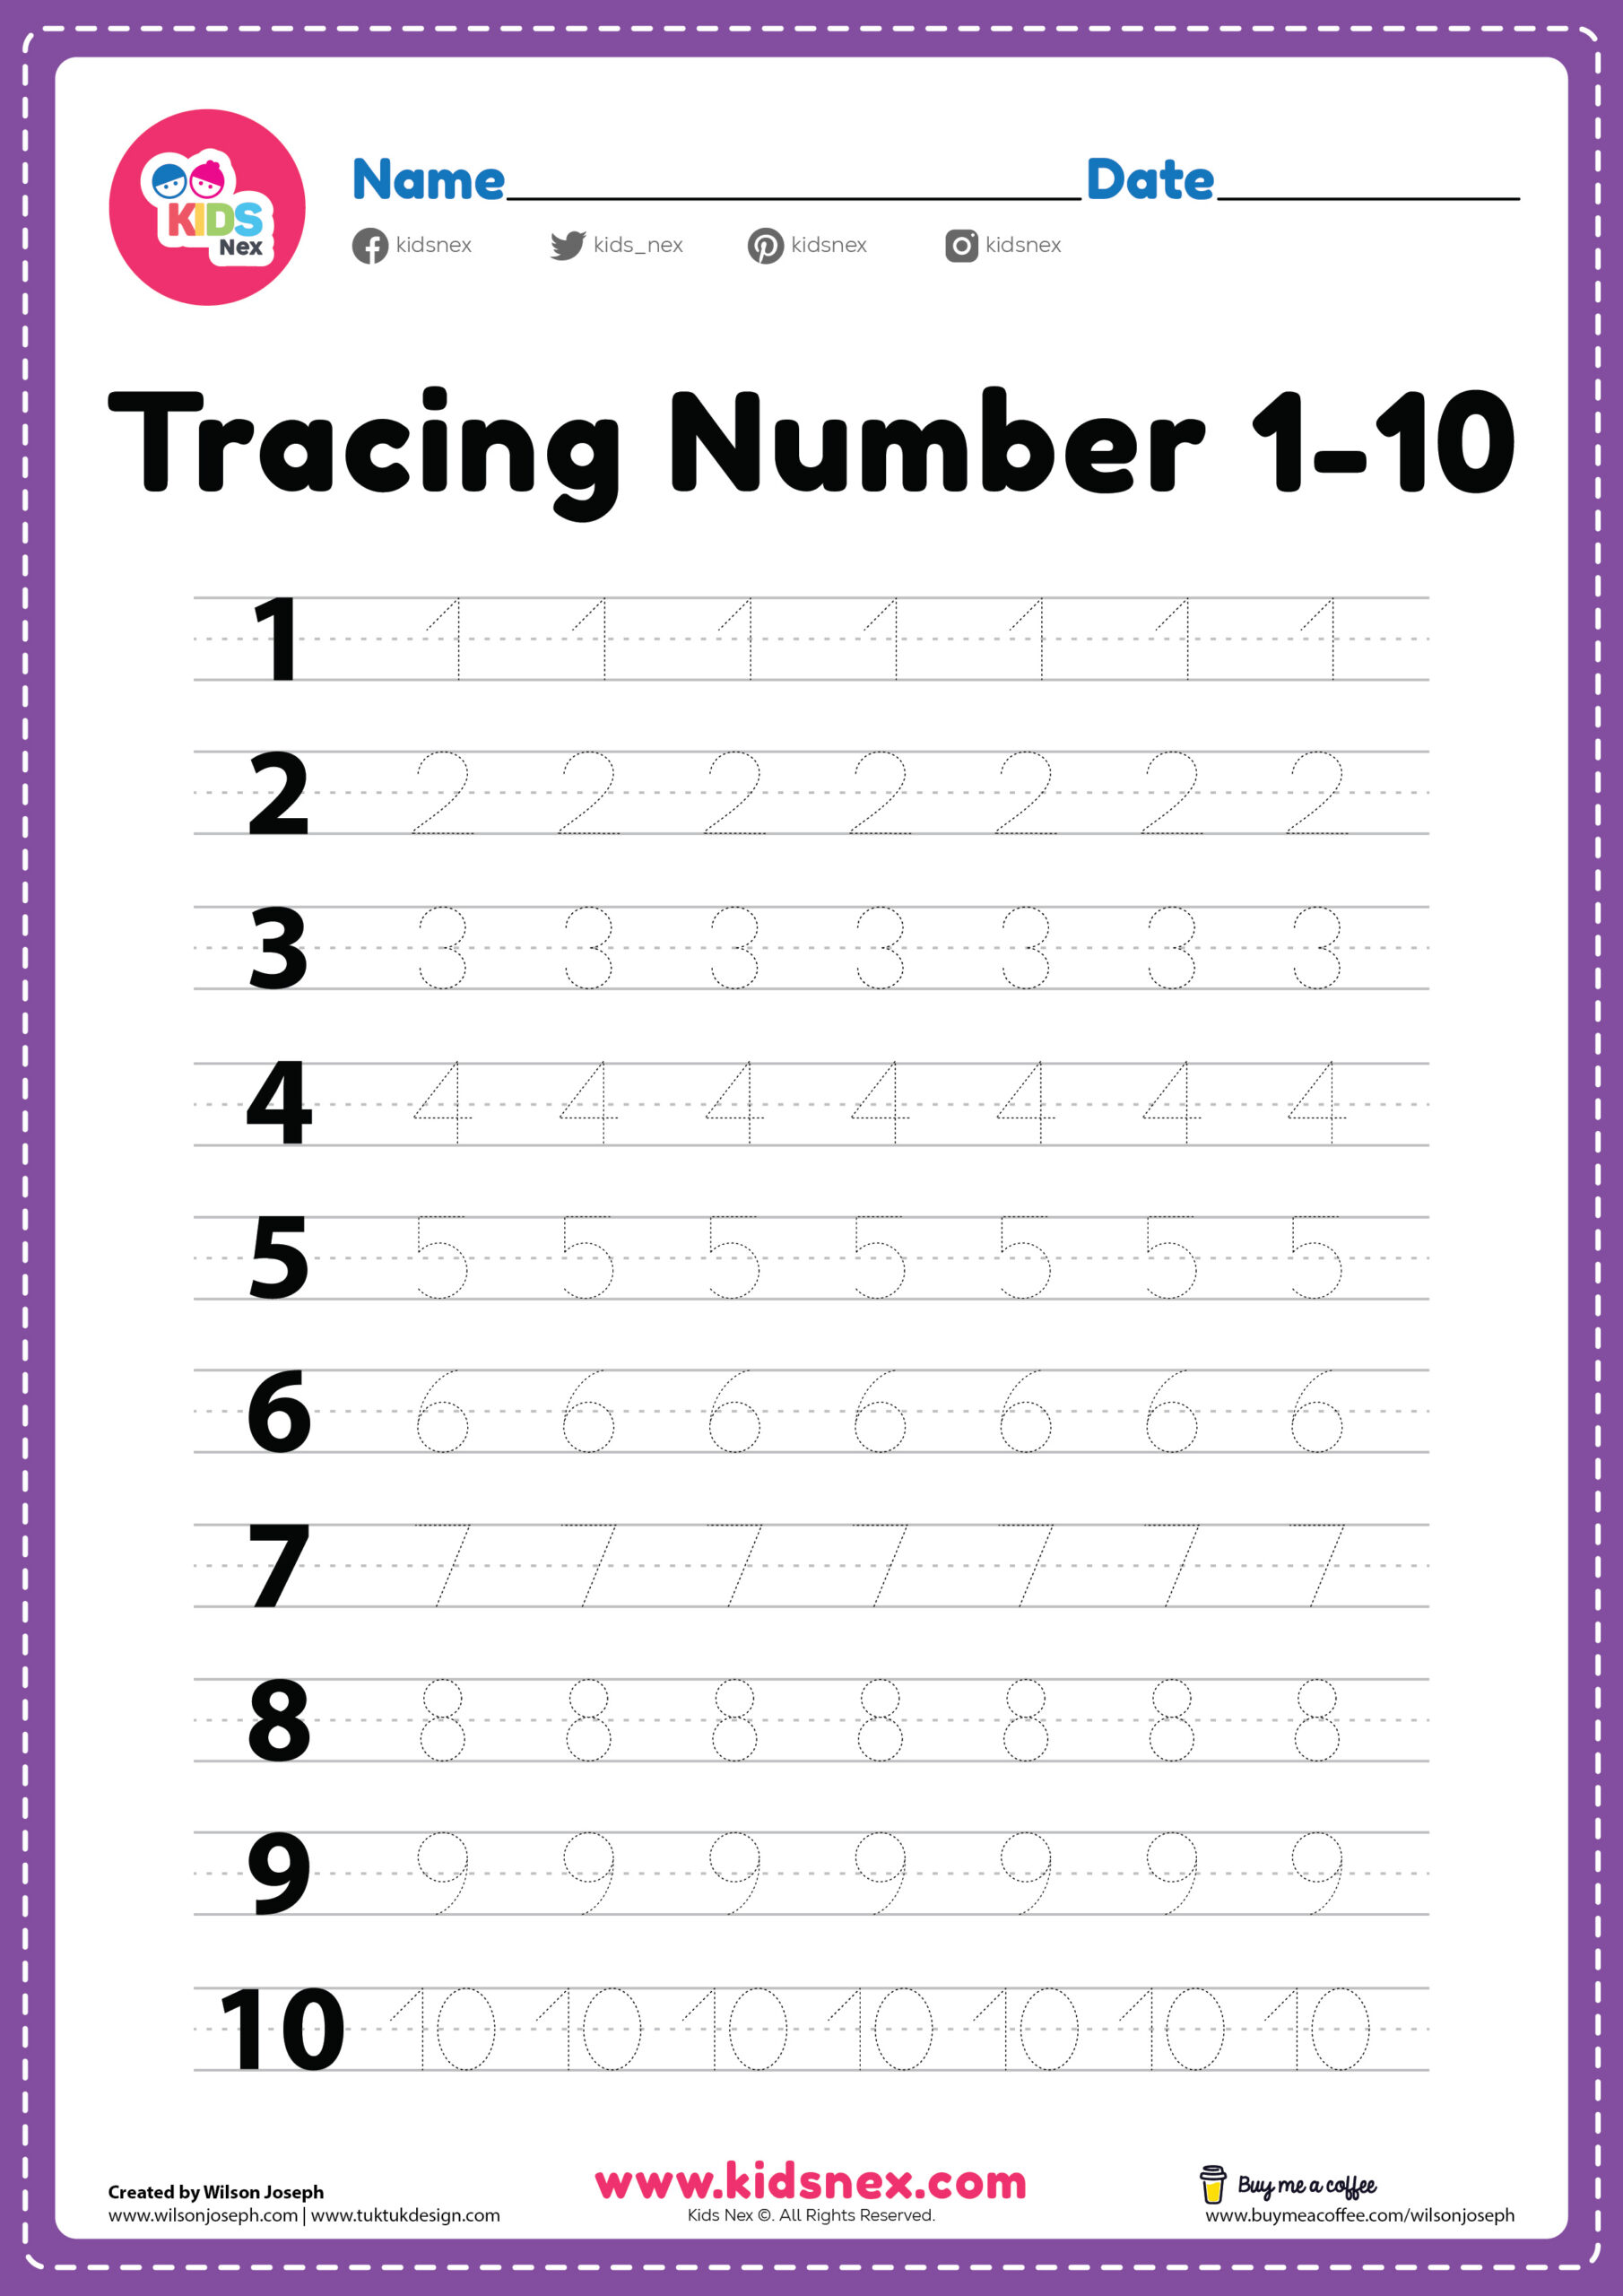 number-tracing-worksheets-pdf-id5-worksheet-tracing-worksheets-25-number-tracing-worksheets